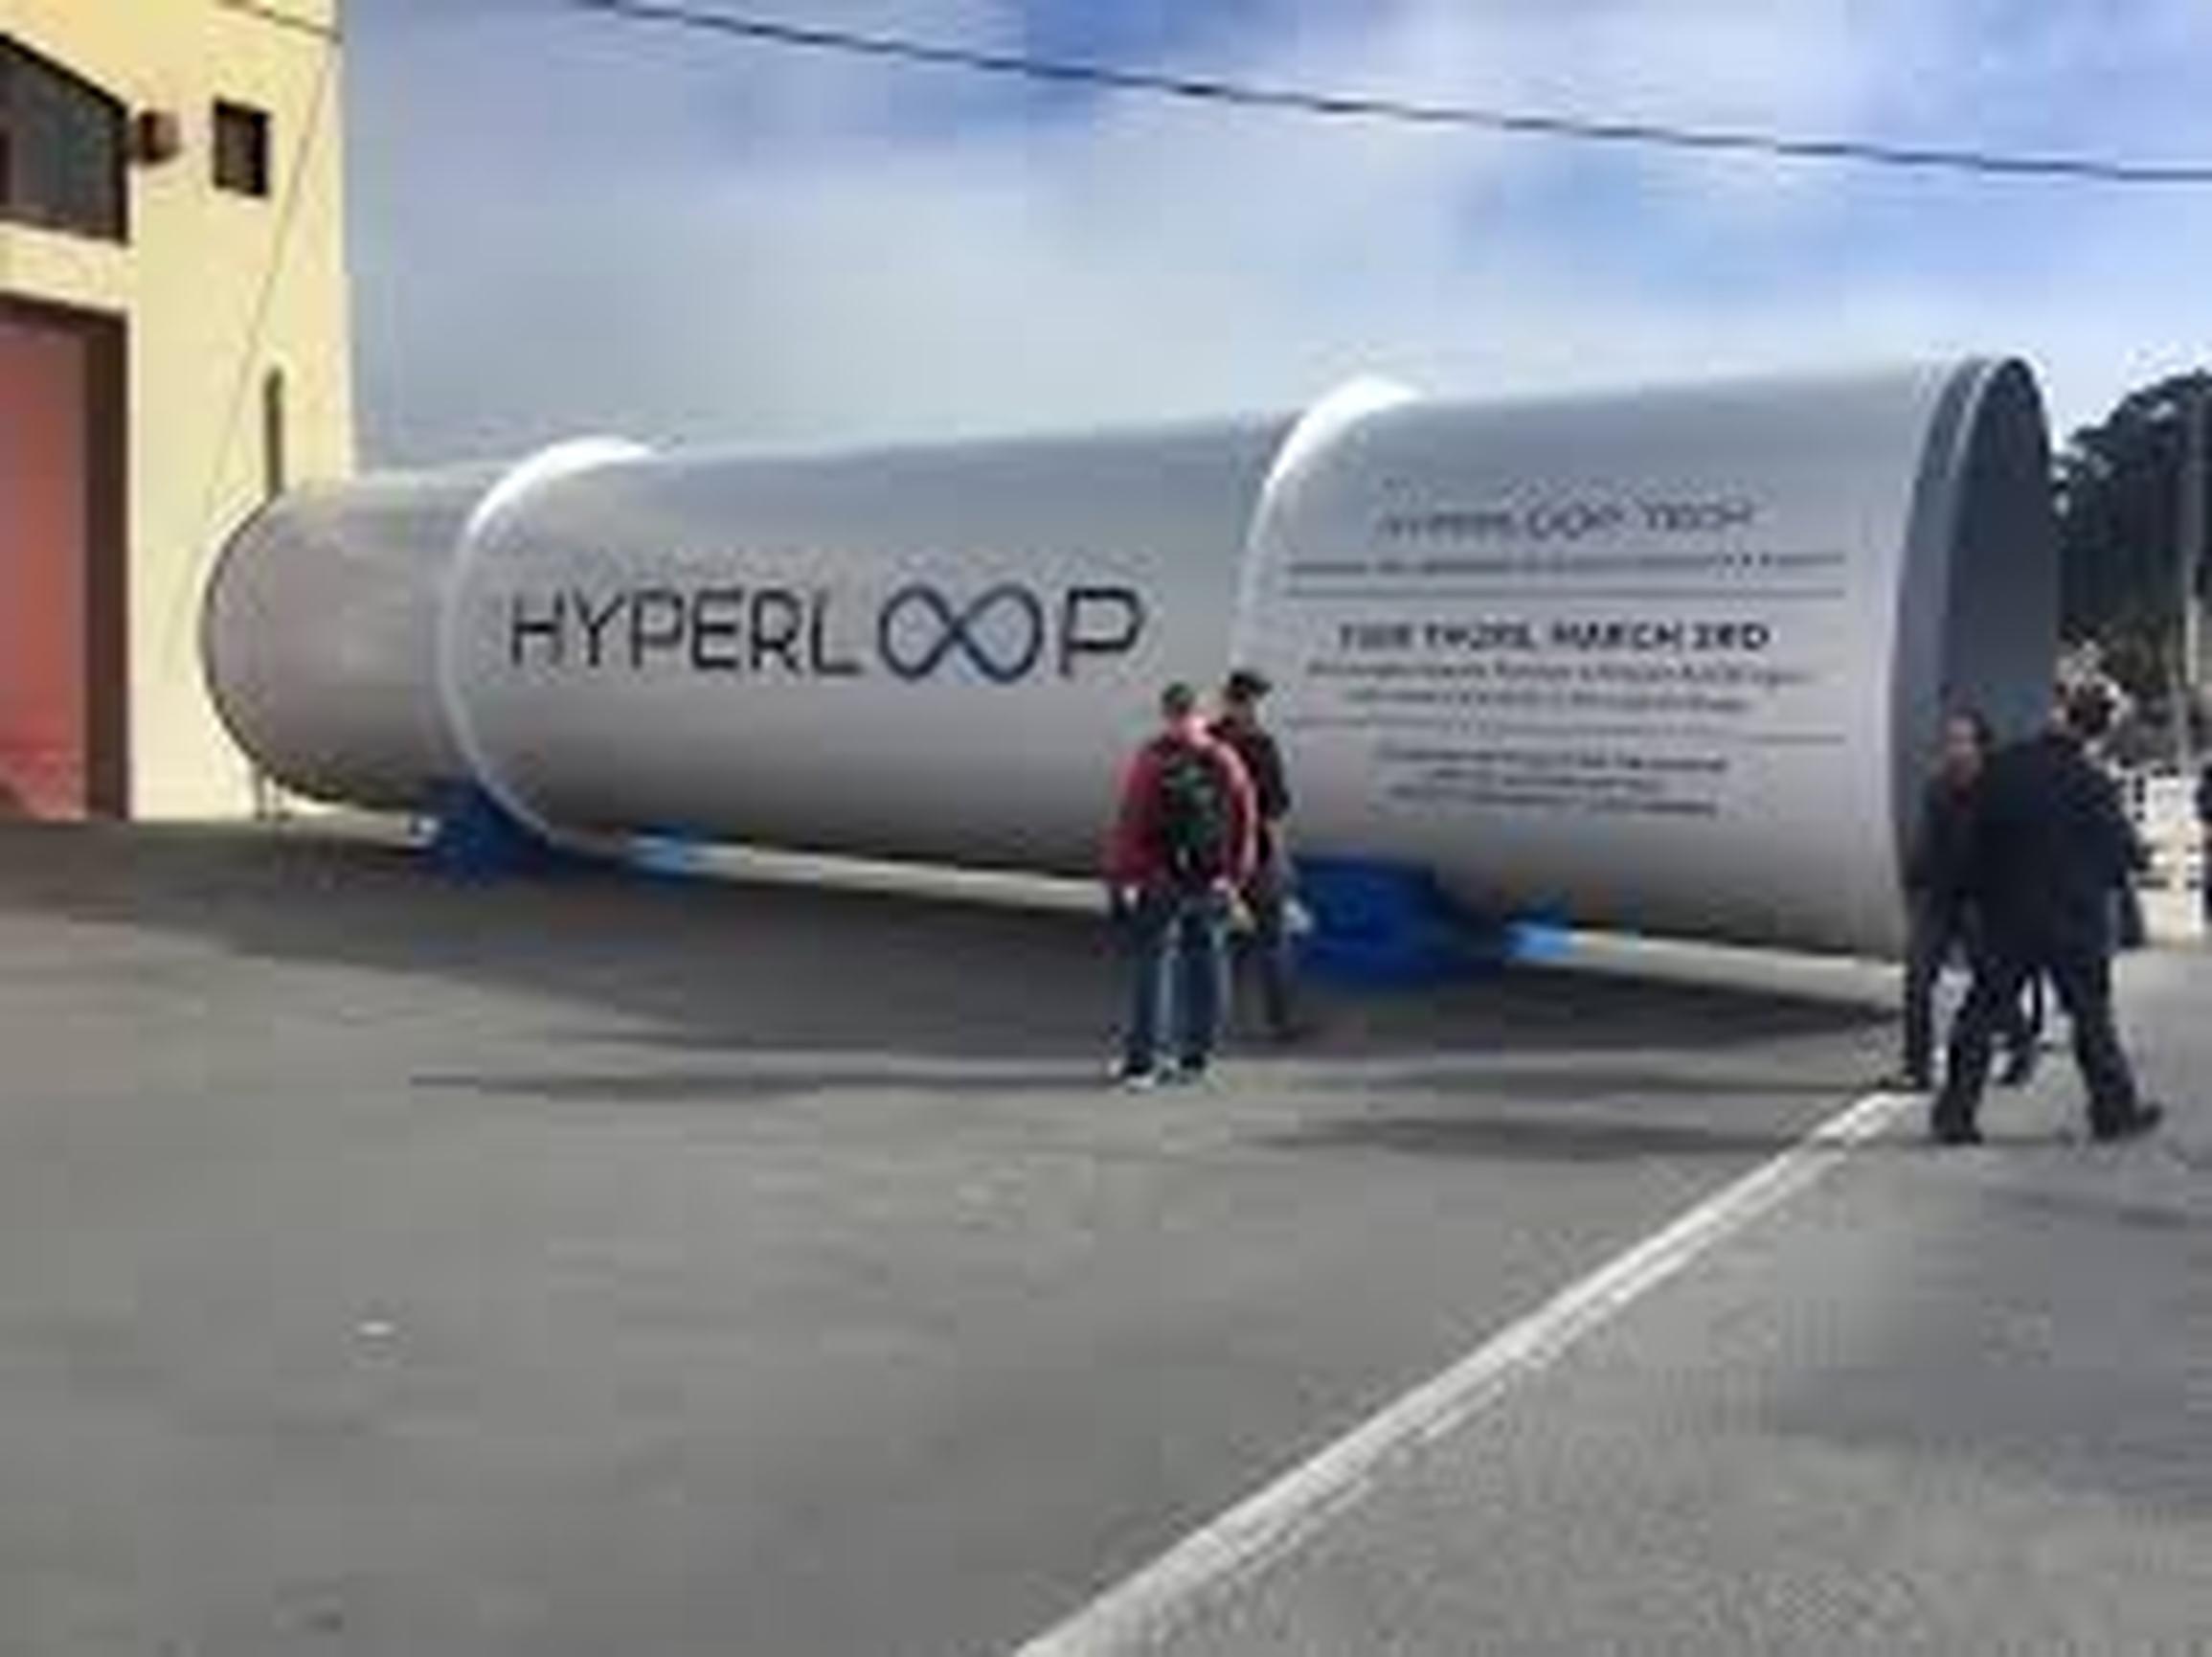 Hyperloop: operations at least 20 years away